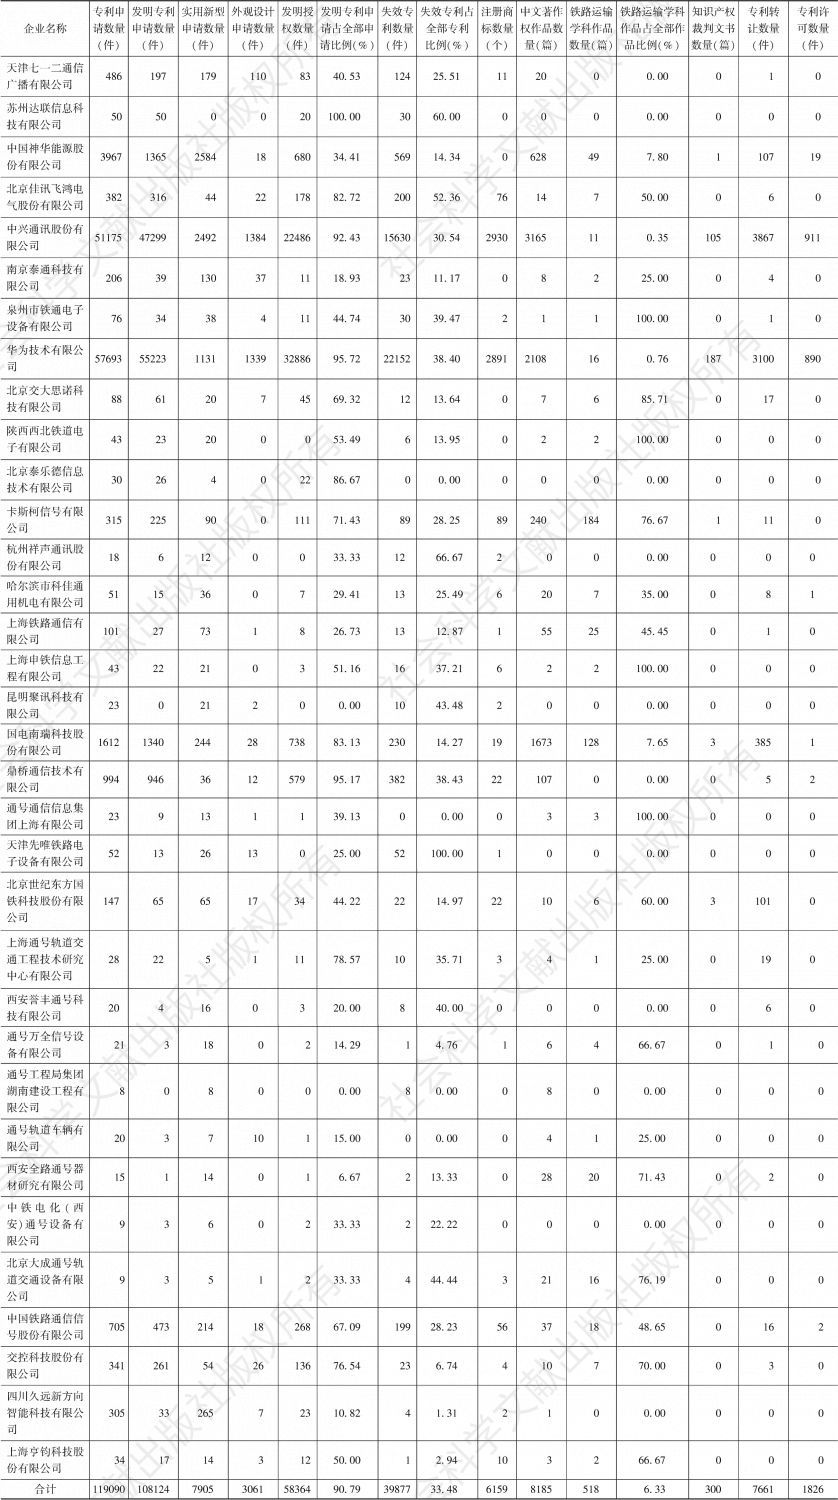 表7-1 中国高铁通信信号34家企业知识产权内容概览